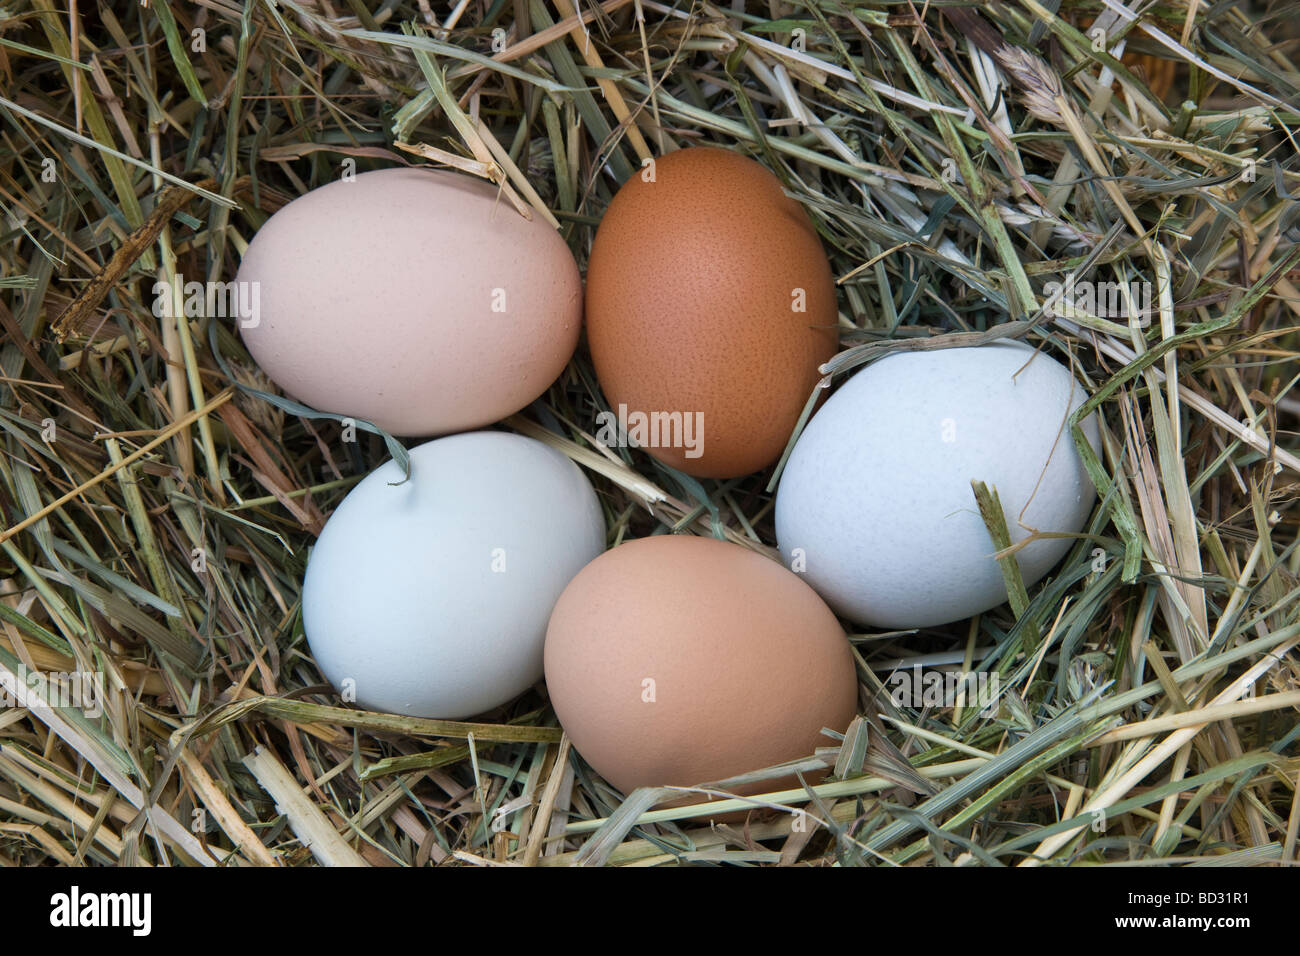 Fresco posate le uova di pollo di colori naturali. Foto Stock